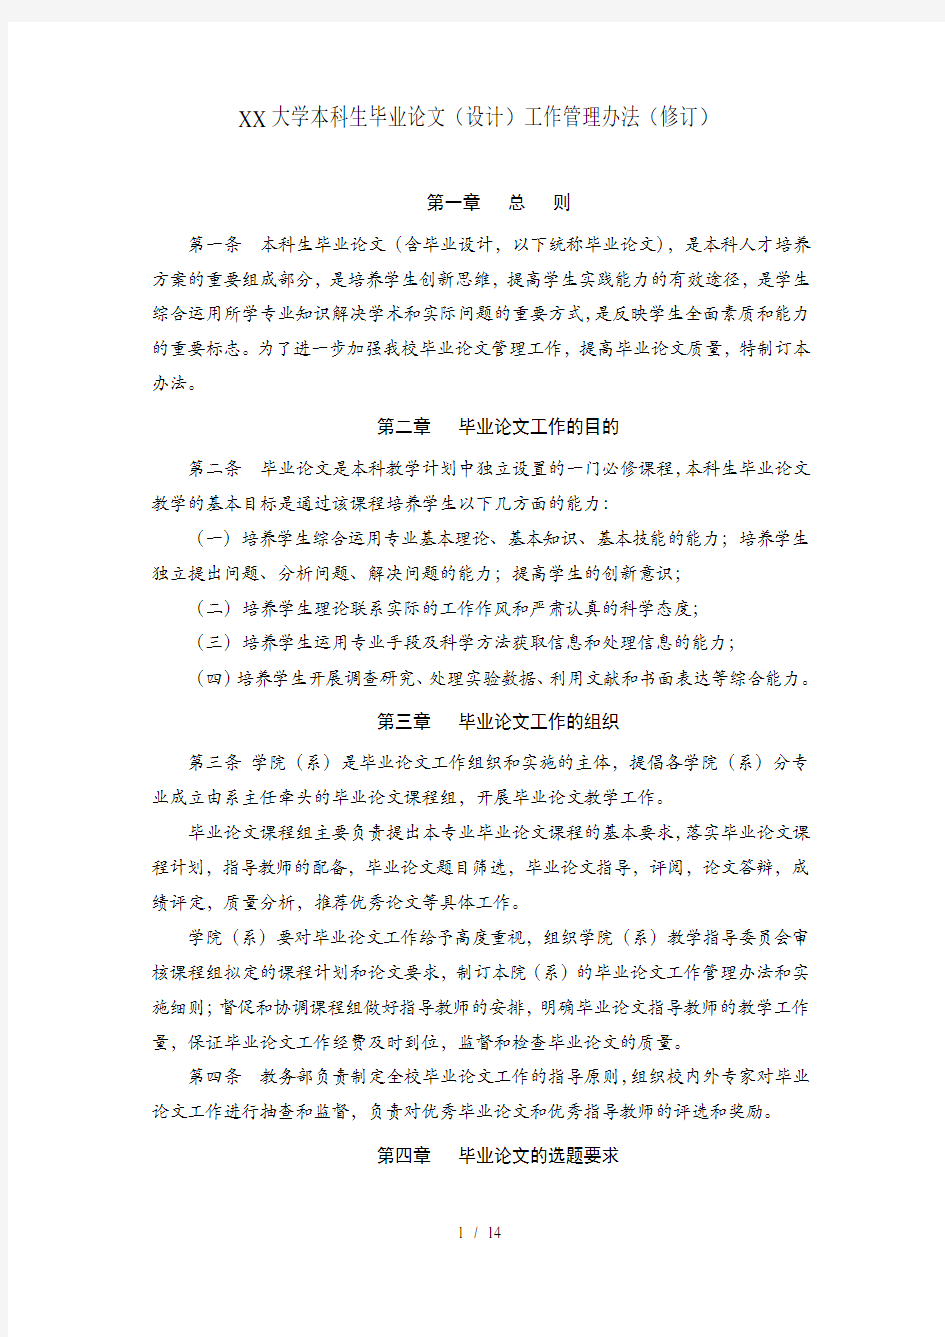 武汉大学本科生毕业论文(设计)工作管理办法